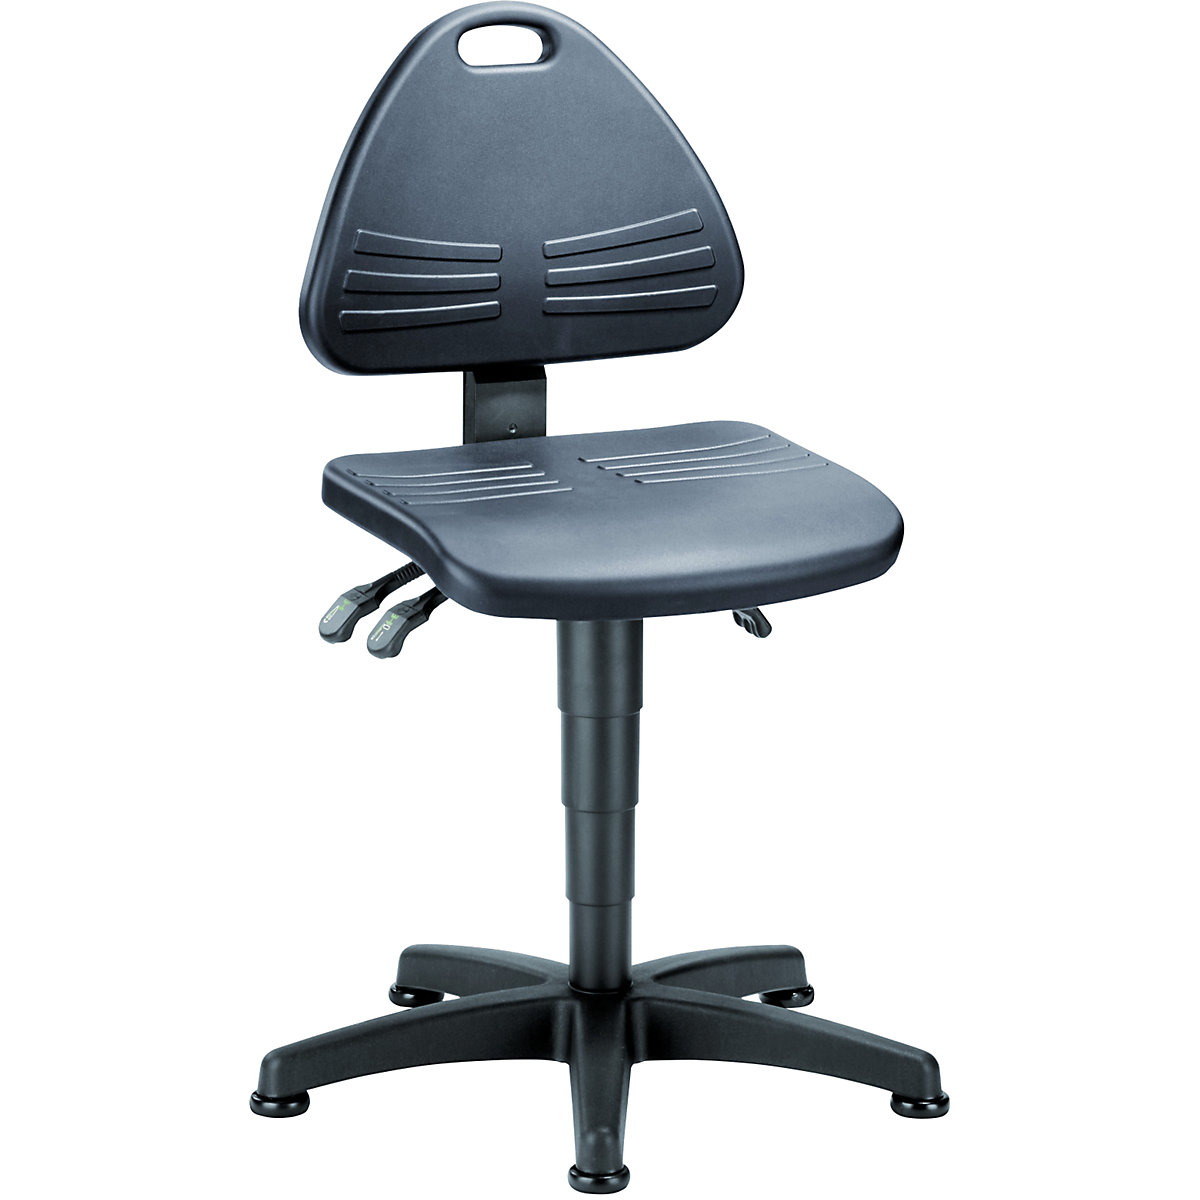 Okretni radni stolac – bimos, obložen PU pjenom, s podnim vodilicama, područje namještanja visine 430 – 600 mm-3